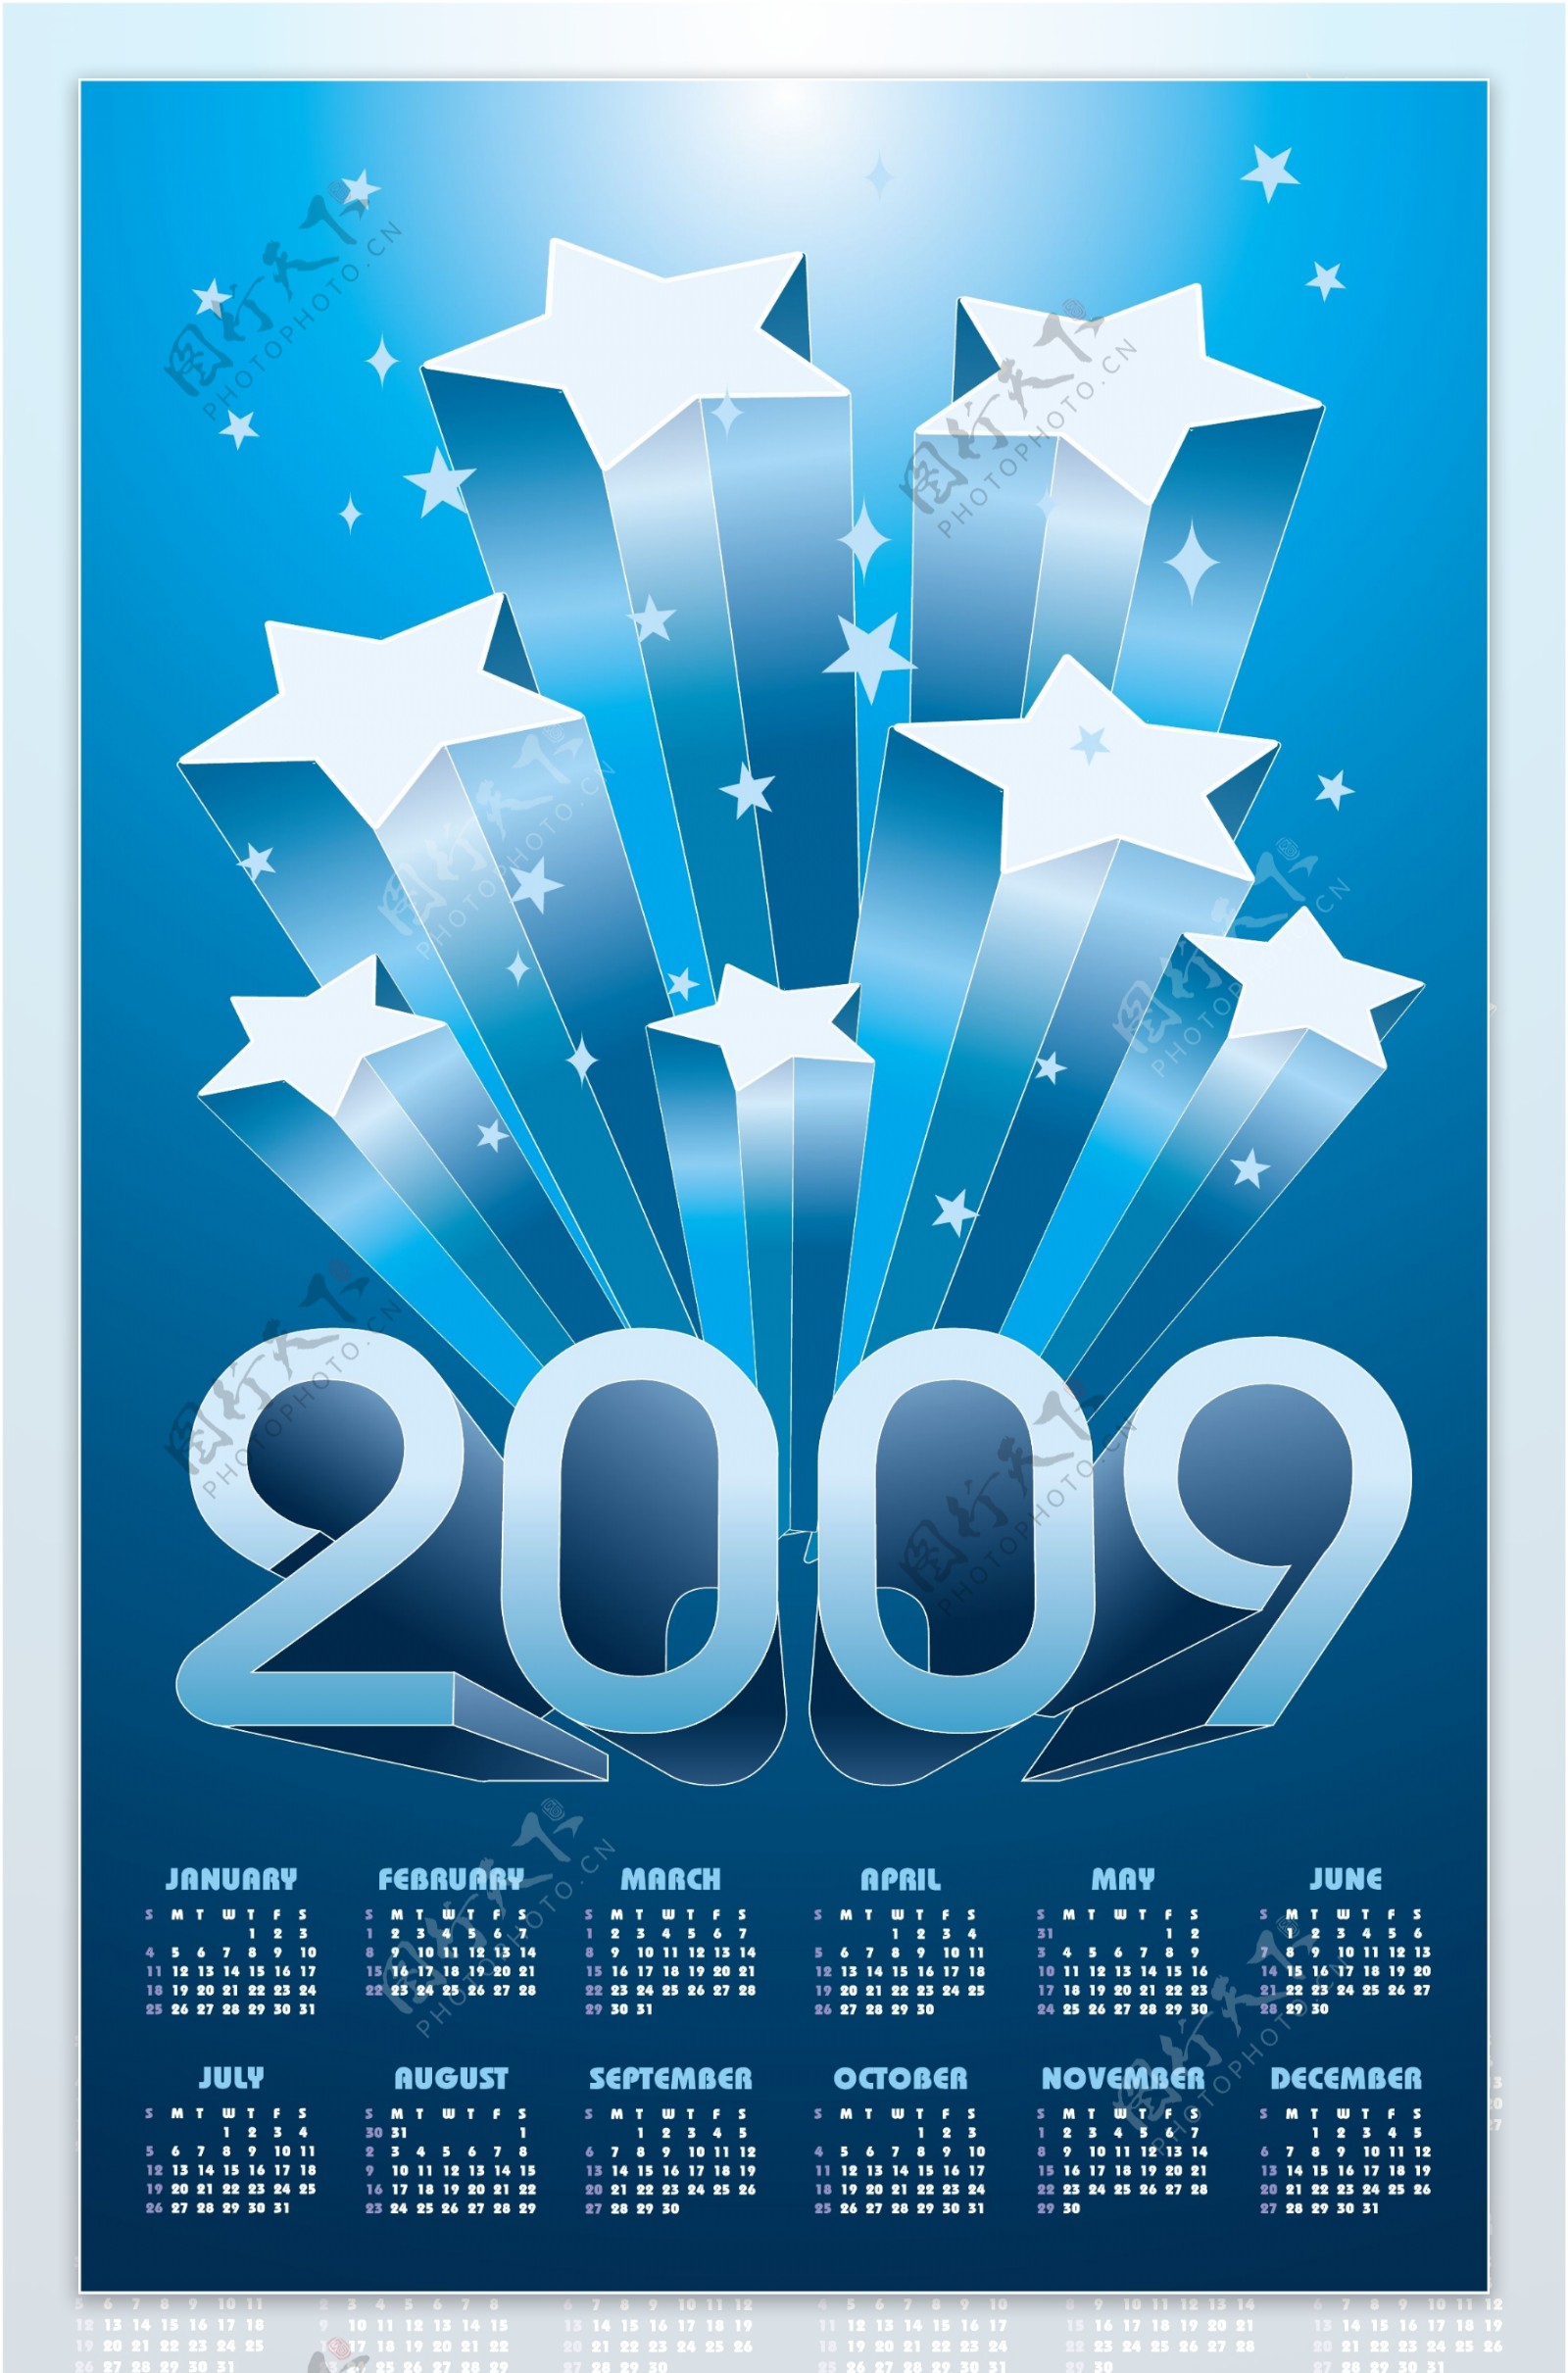 200912个月的日历